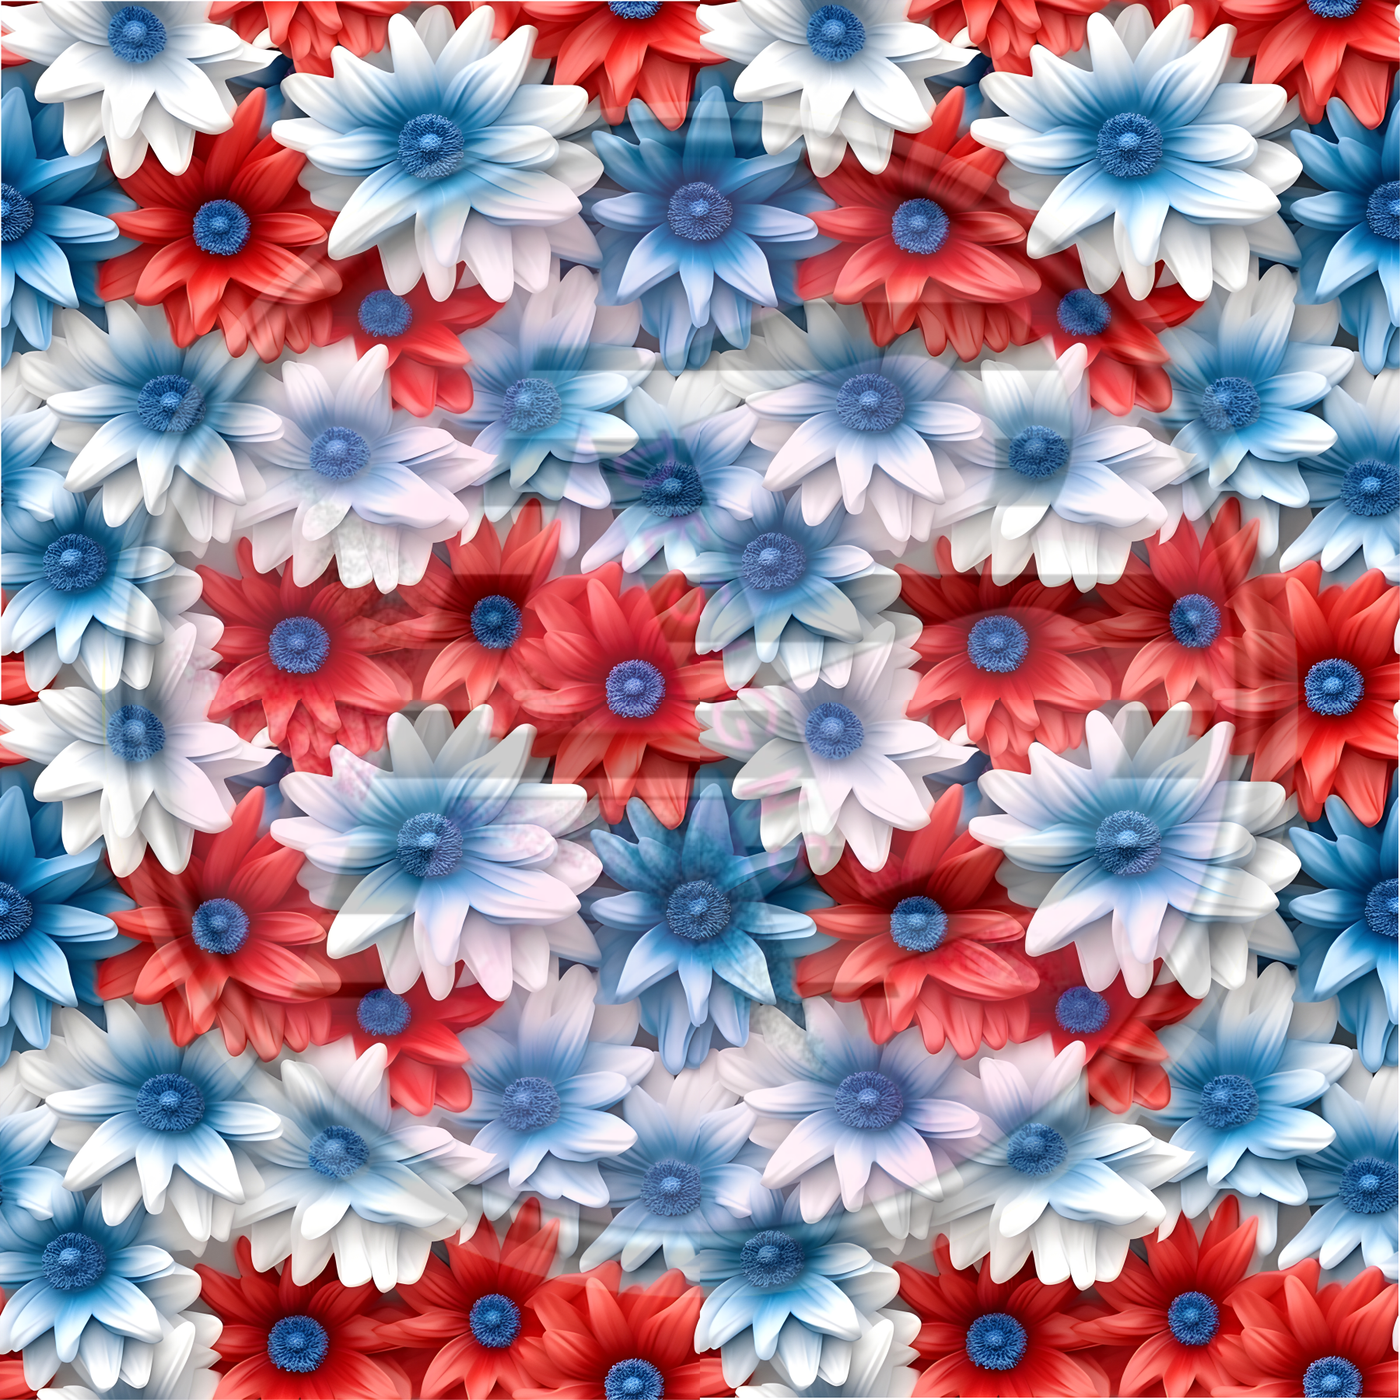 Adhesive Patterned Vinyl - Patriotic Floral 05